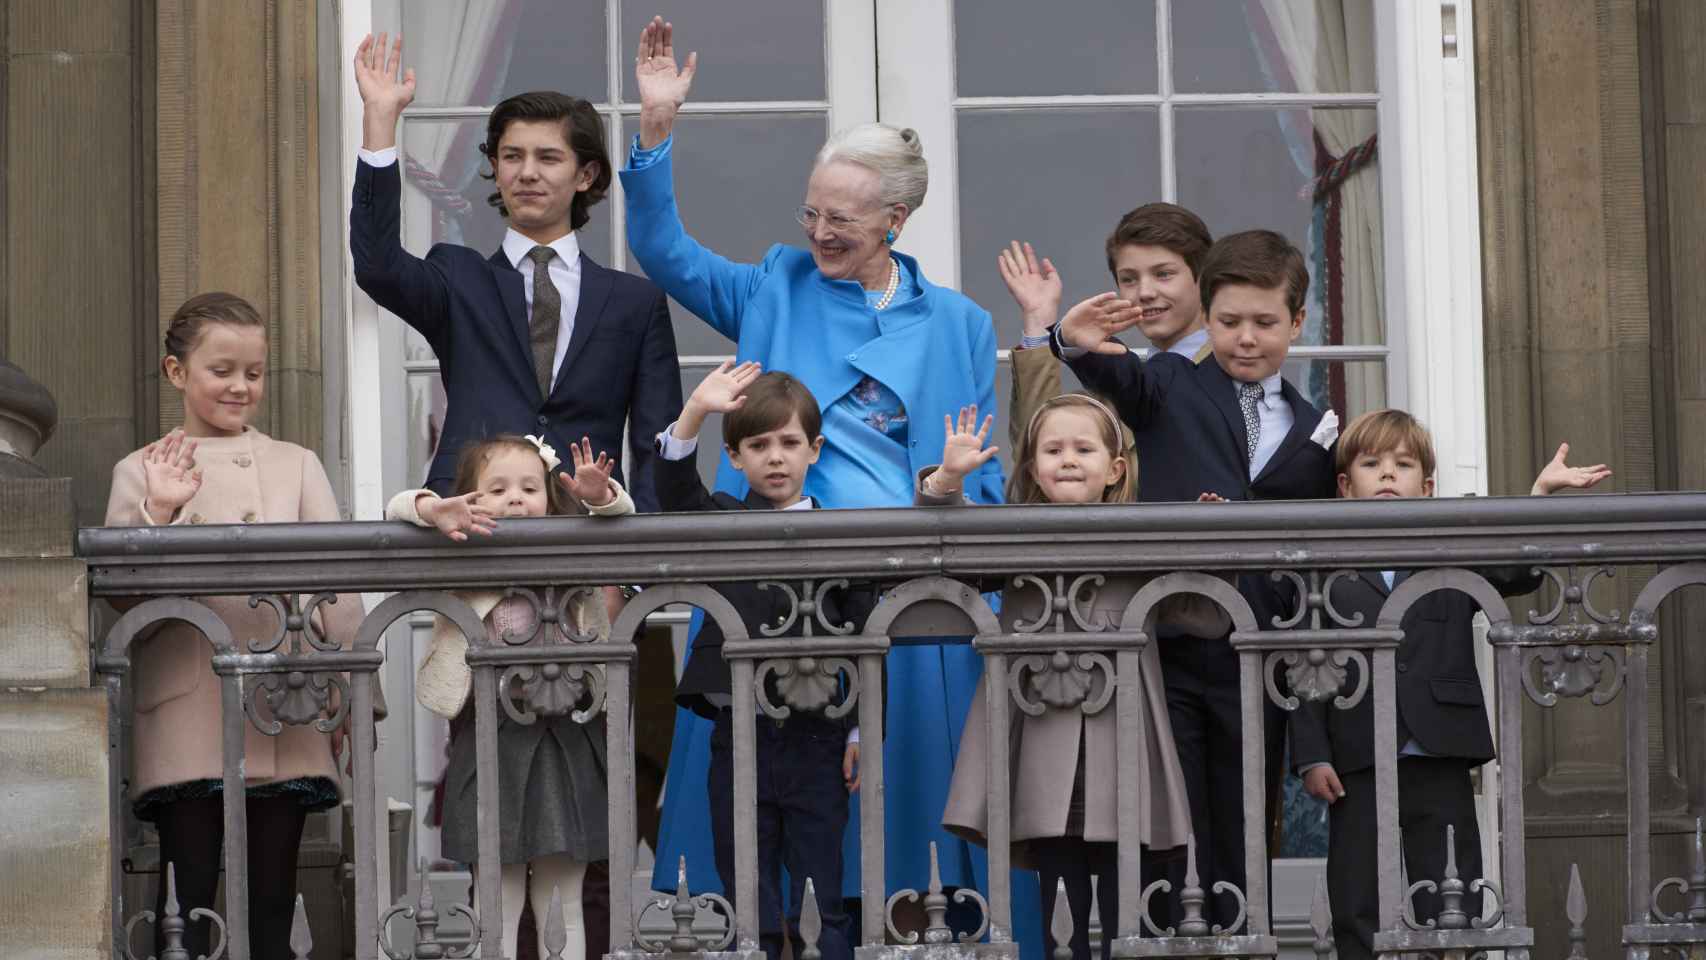 La Reina Margarita quiso que sus nietos salieran a saludar con ella